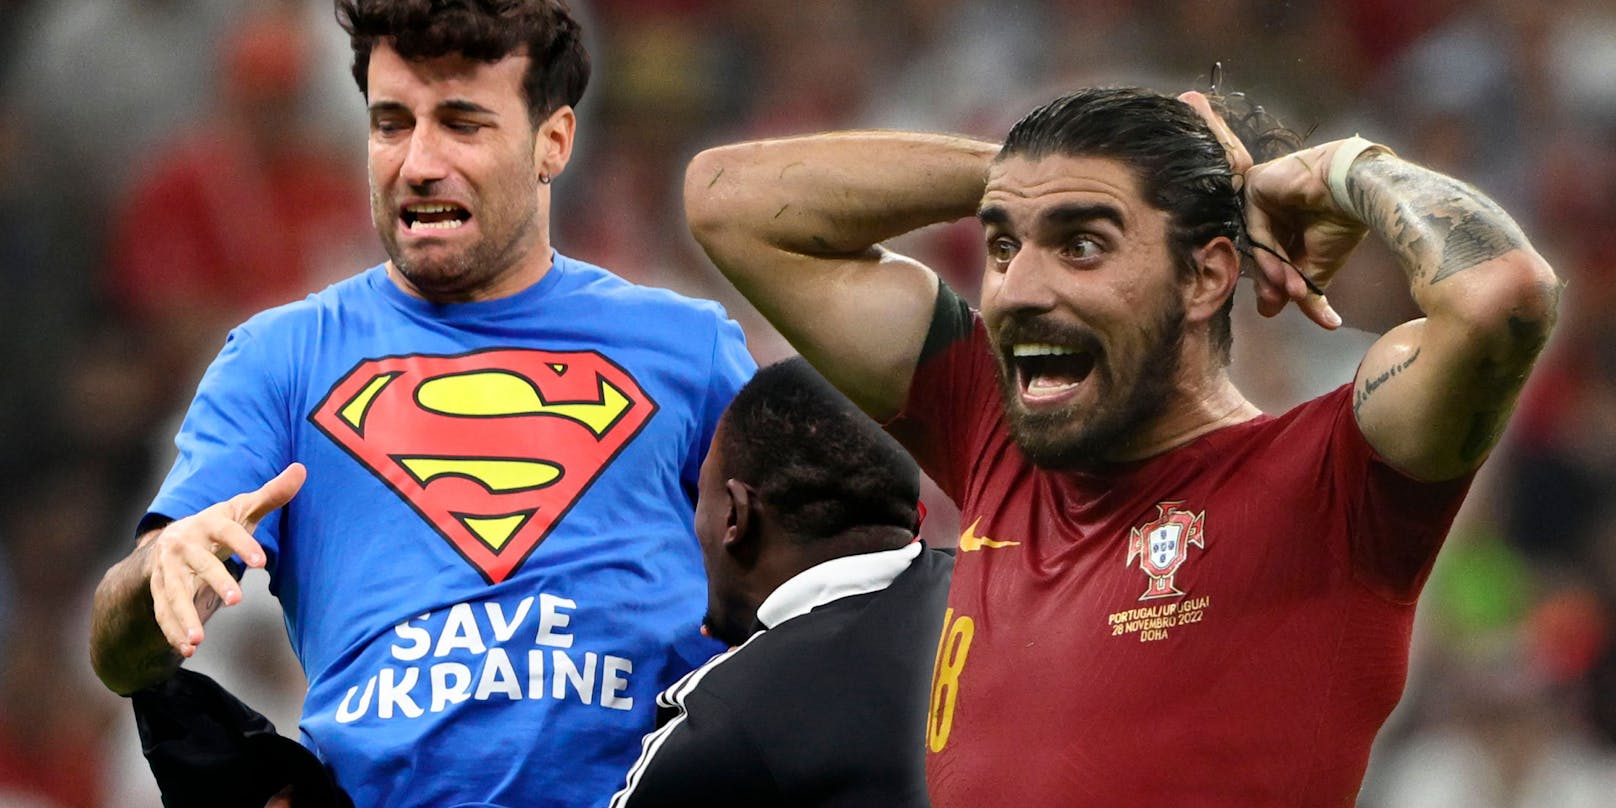 Der Italiener Mario Ferri setzte in Katar als Flitzer ein Zeichen. Portugals Ruben Neves macht sich Sorgen.